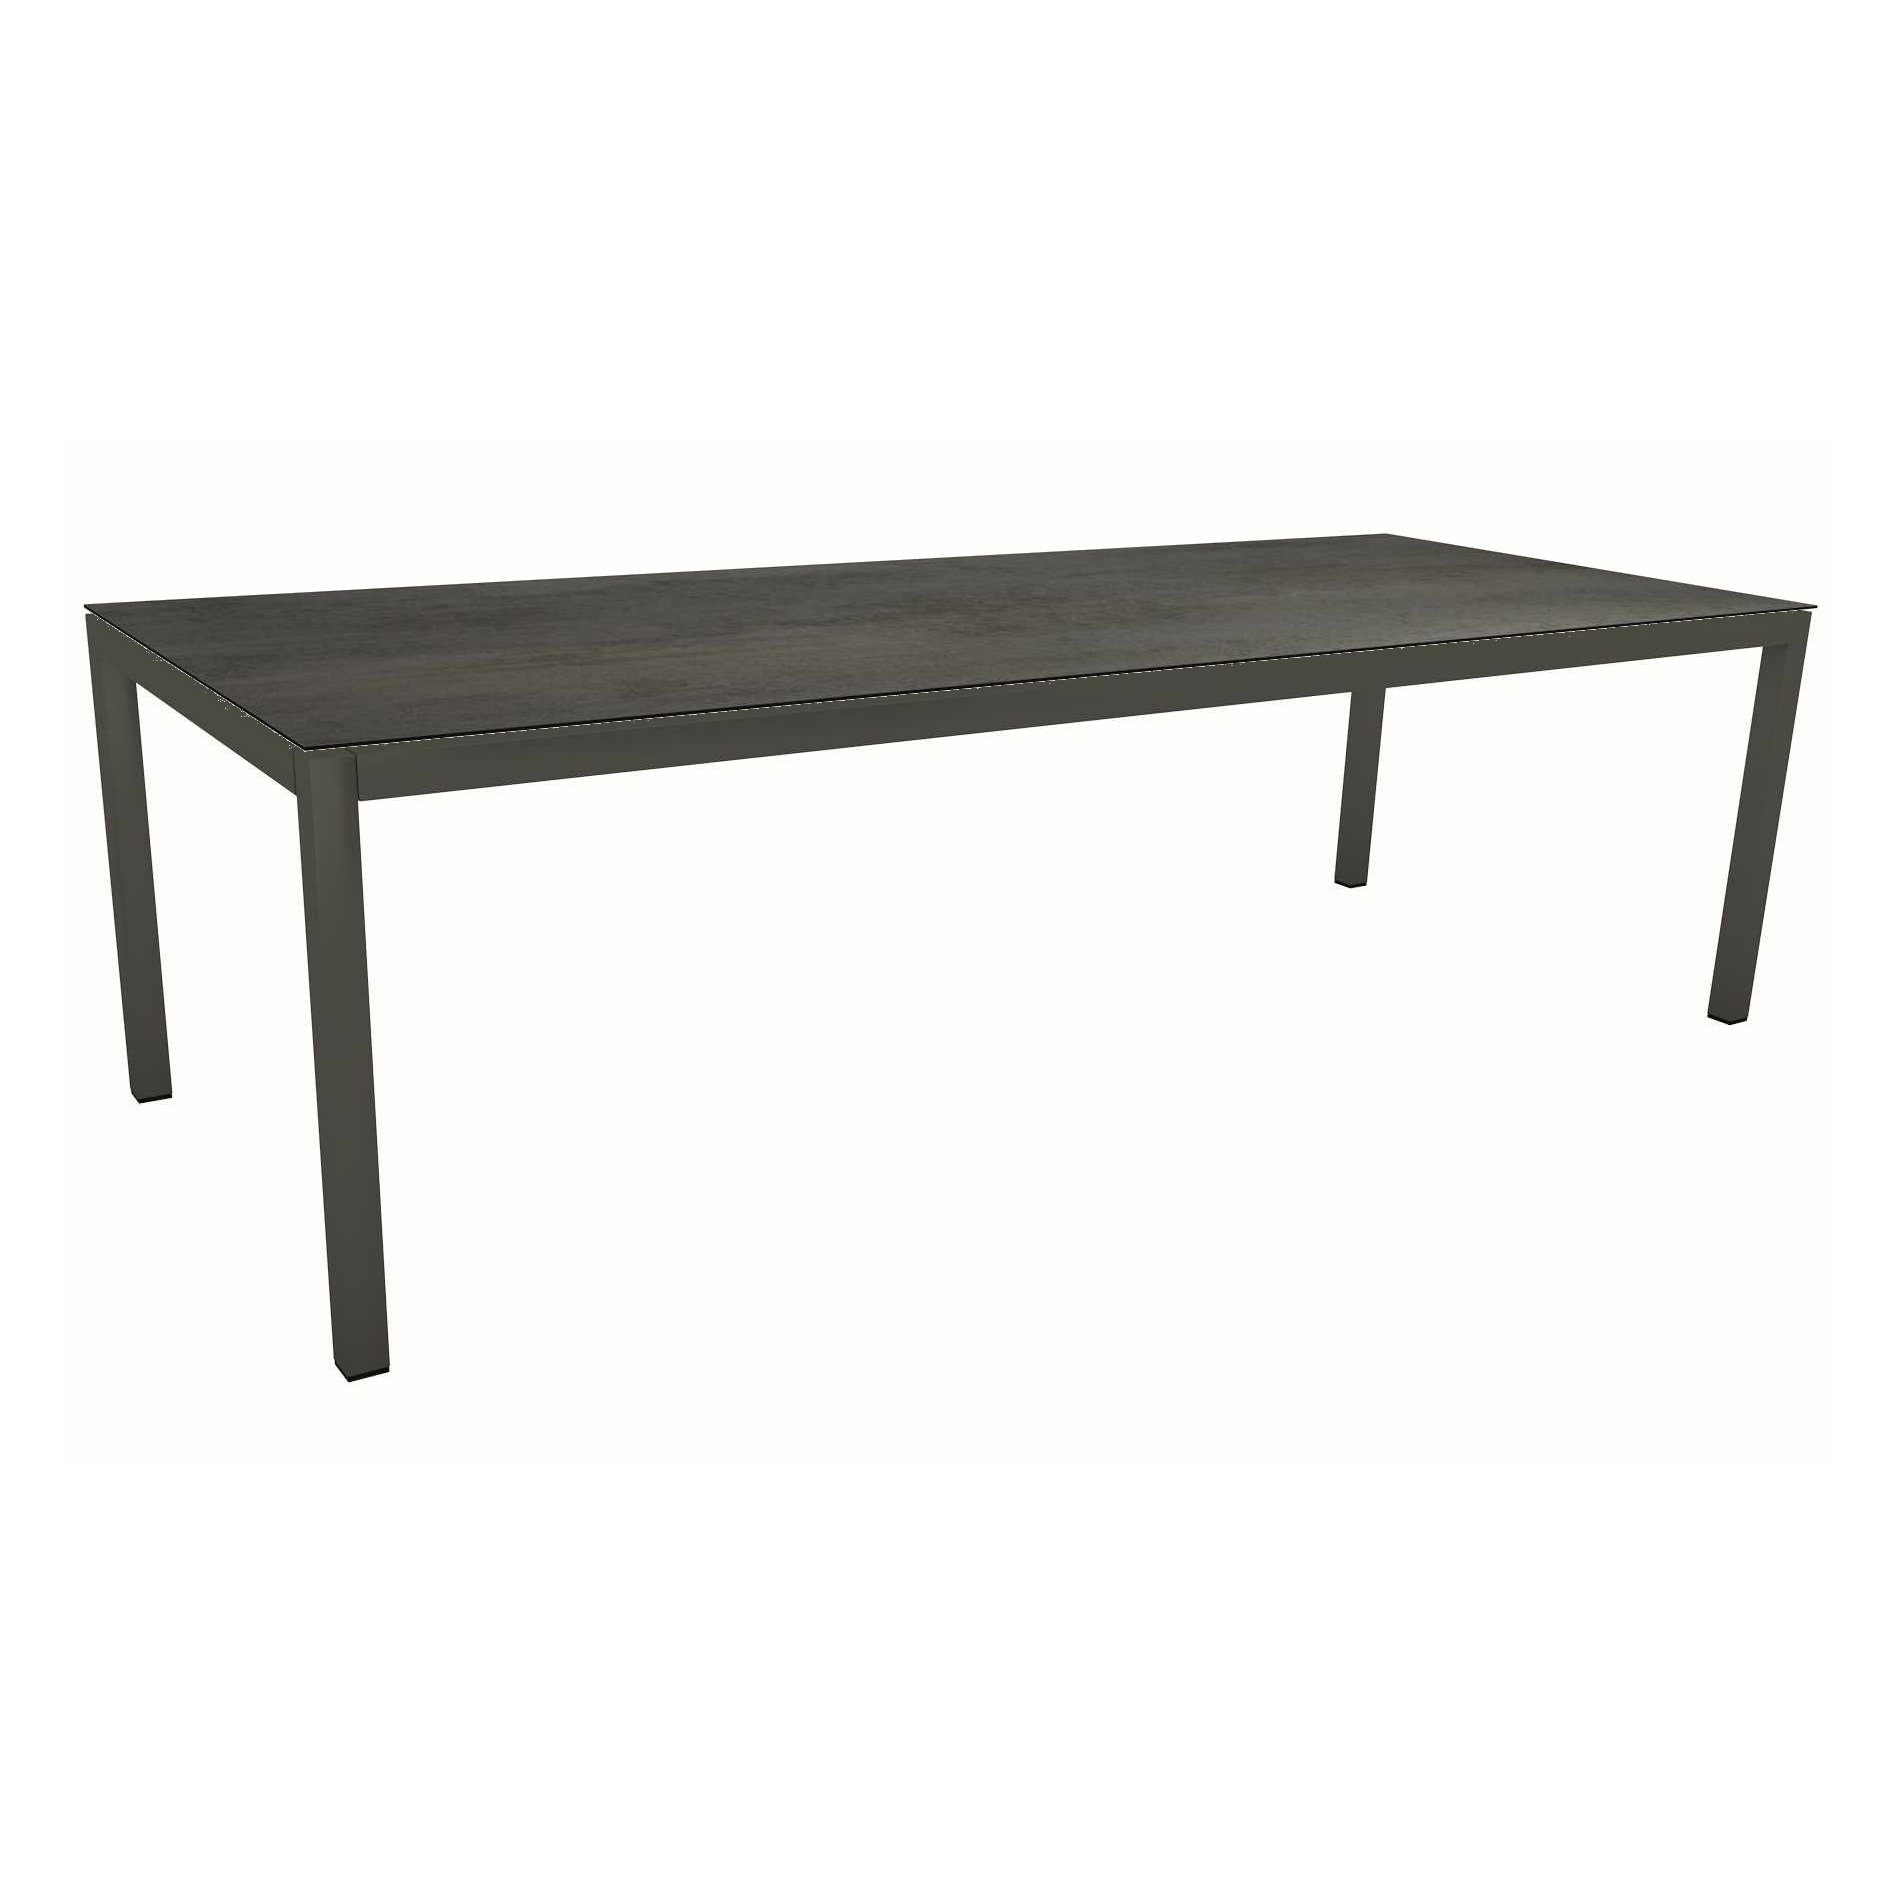 Stern Tischsystem Gartentisch, Gestell Aluminium anthrazit, Tischplatte HPL Nitro, Maße: 250x100 cm